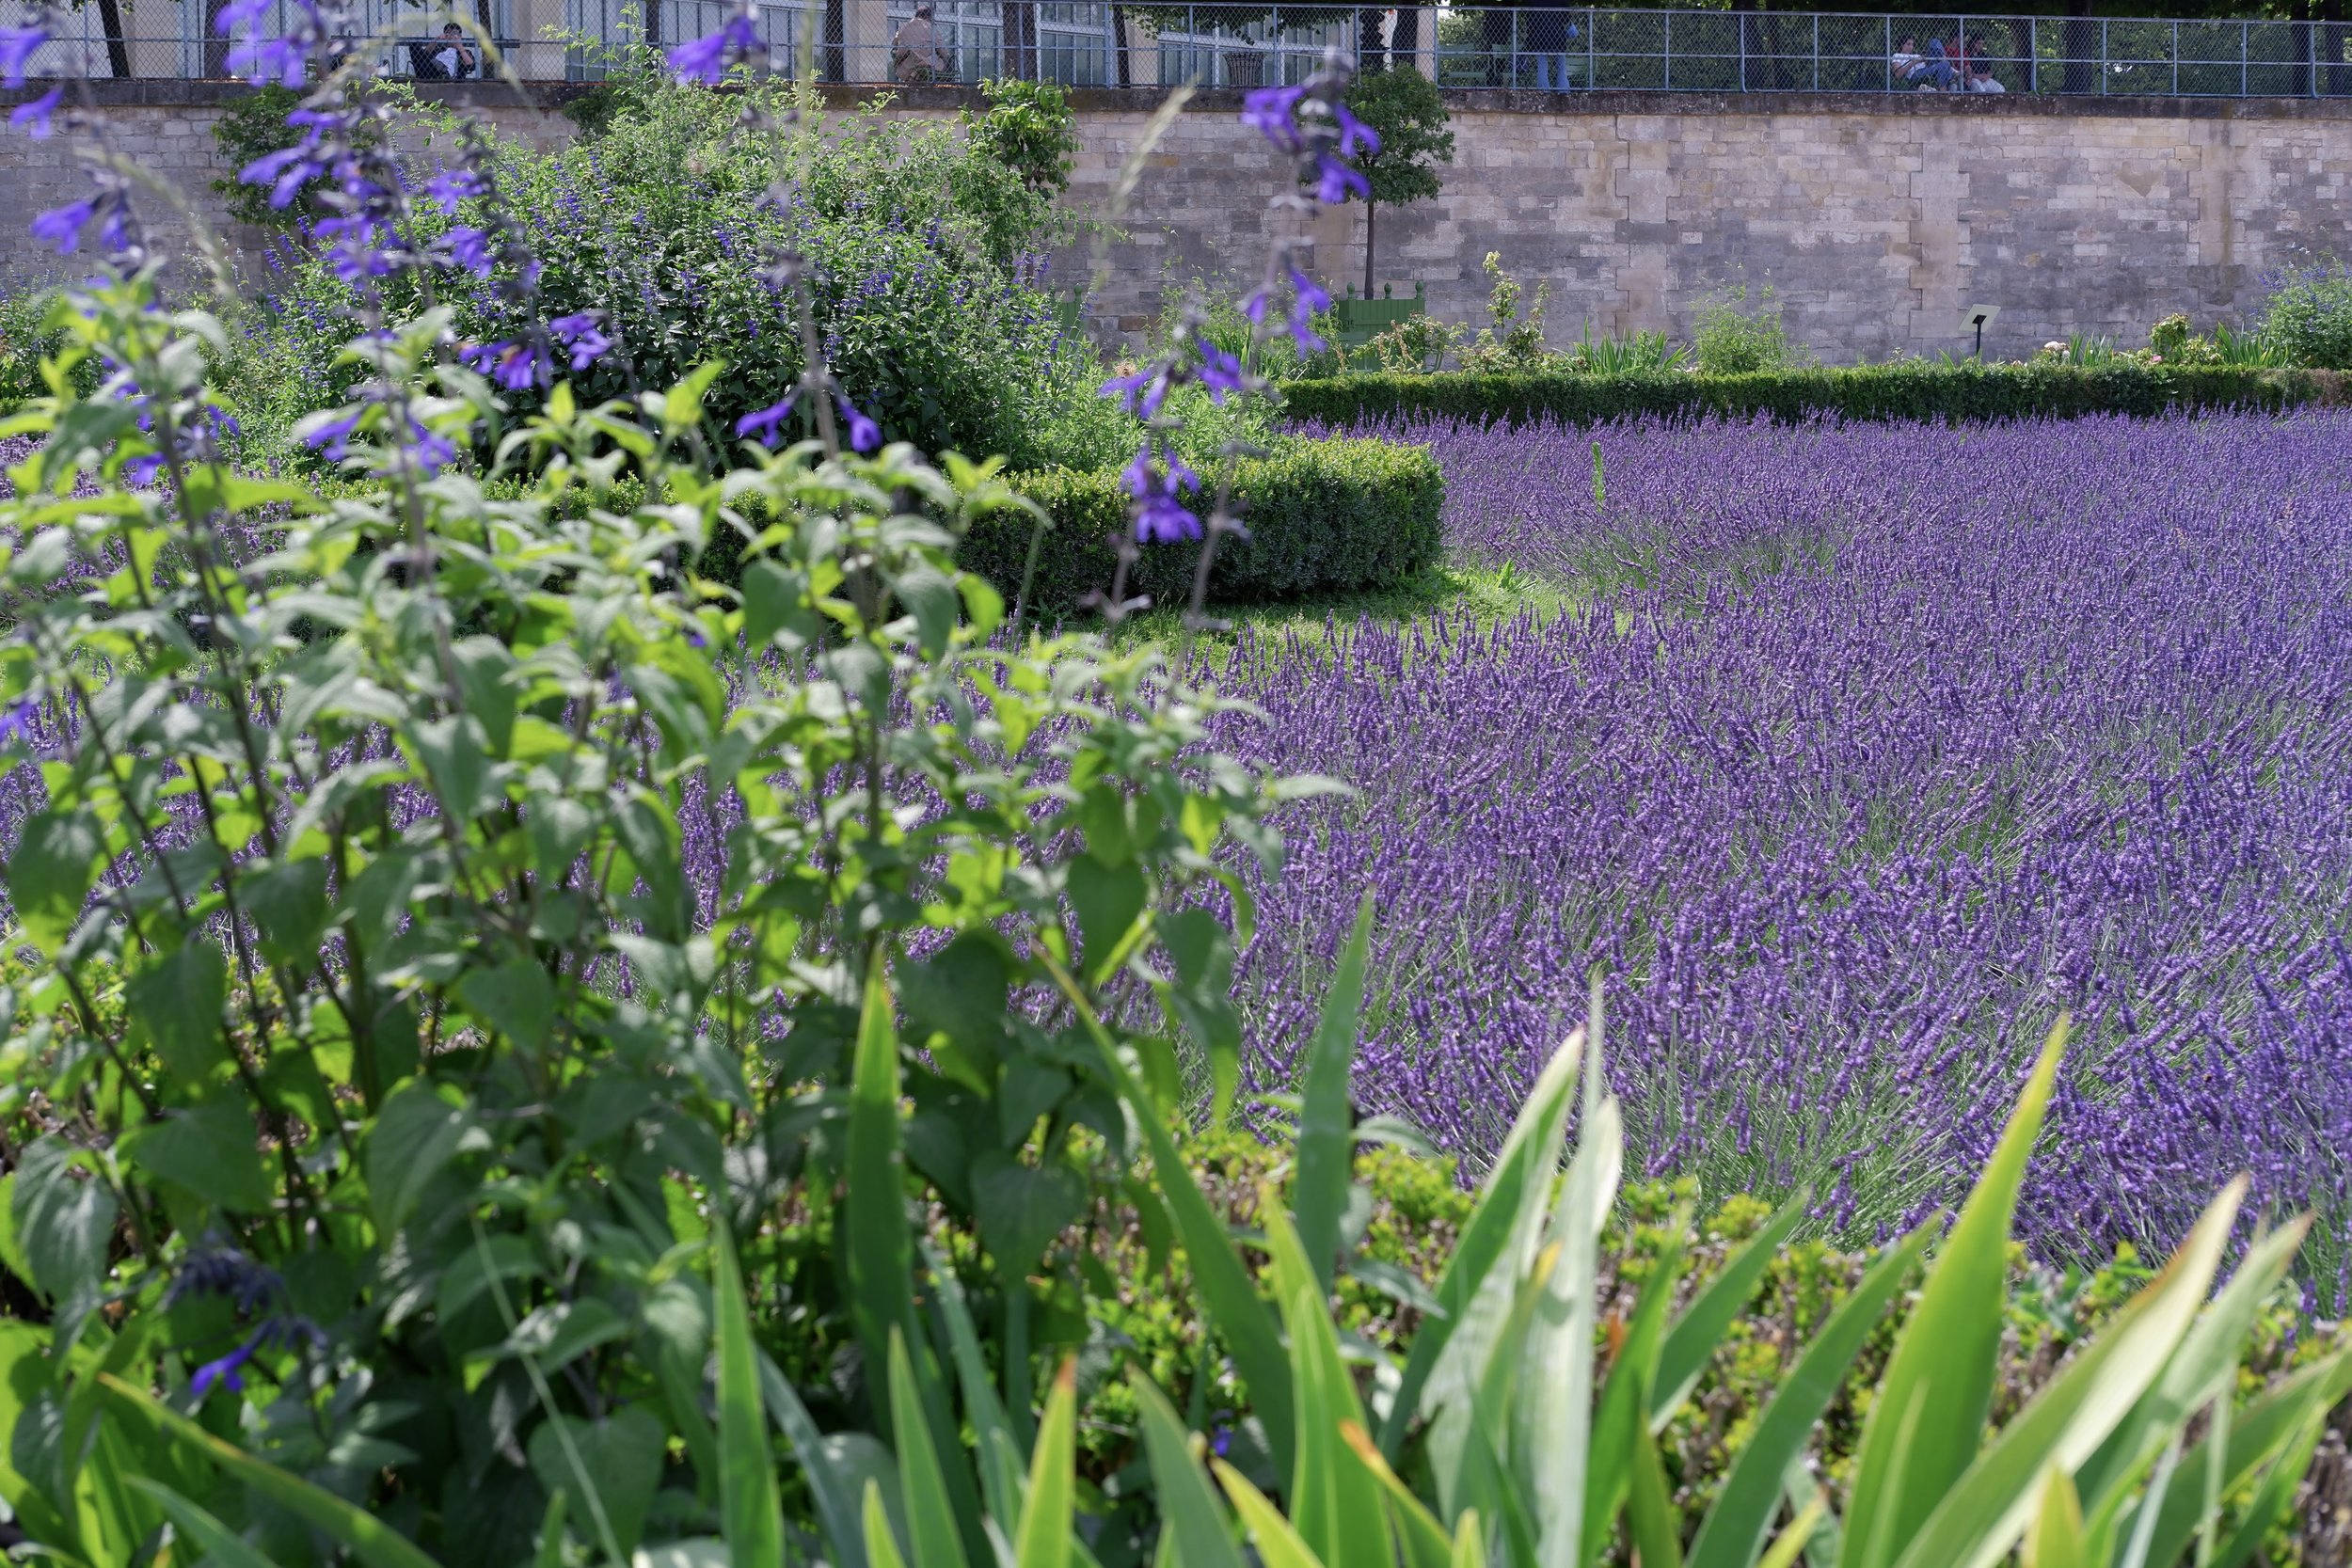  lavender field in jardins des  Tuileries  